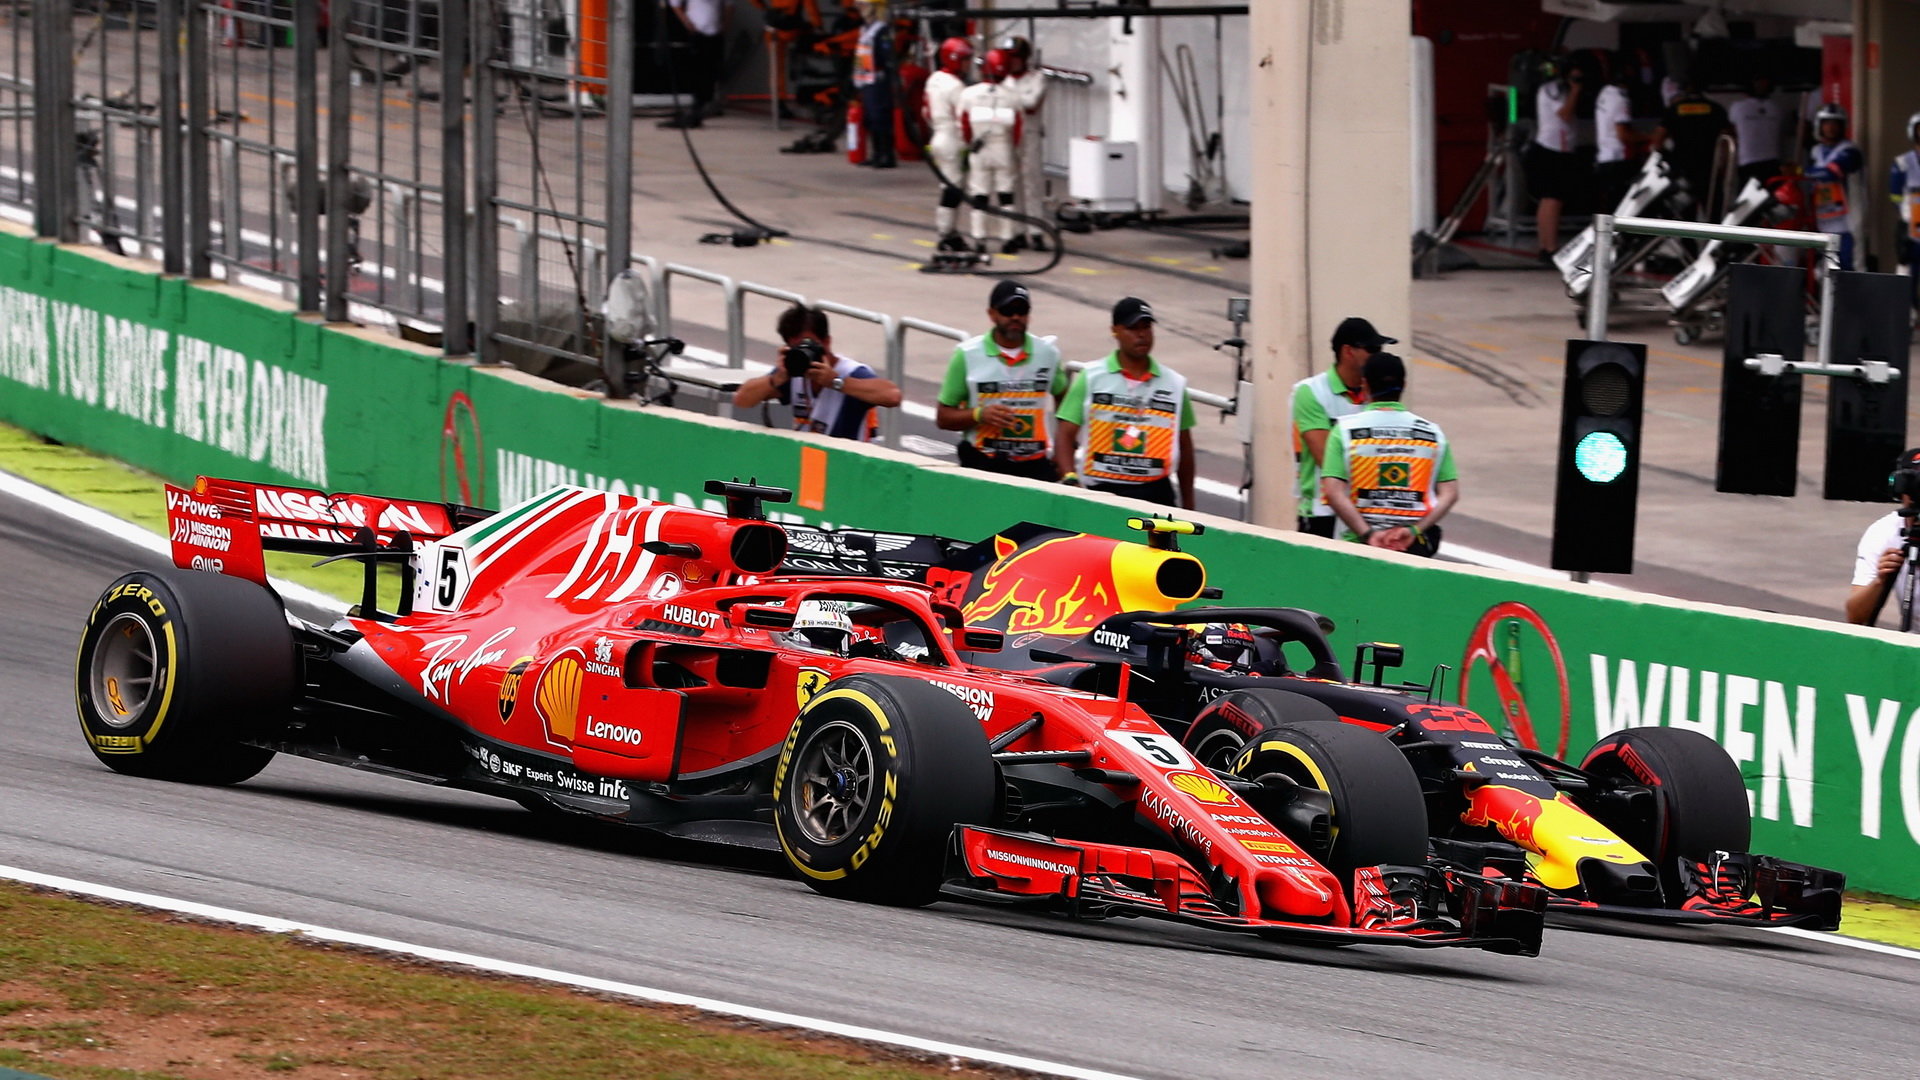 Max Verstappen a Sebastian Vettel v závodě v Brazílii